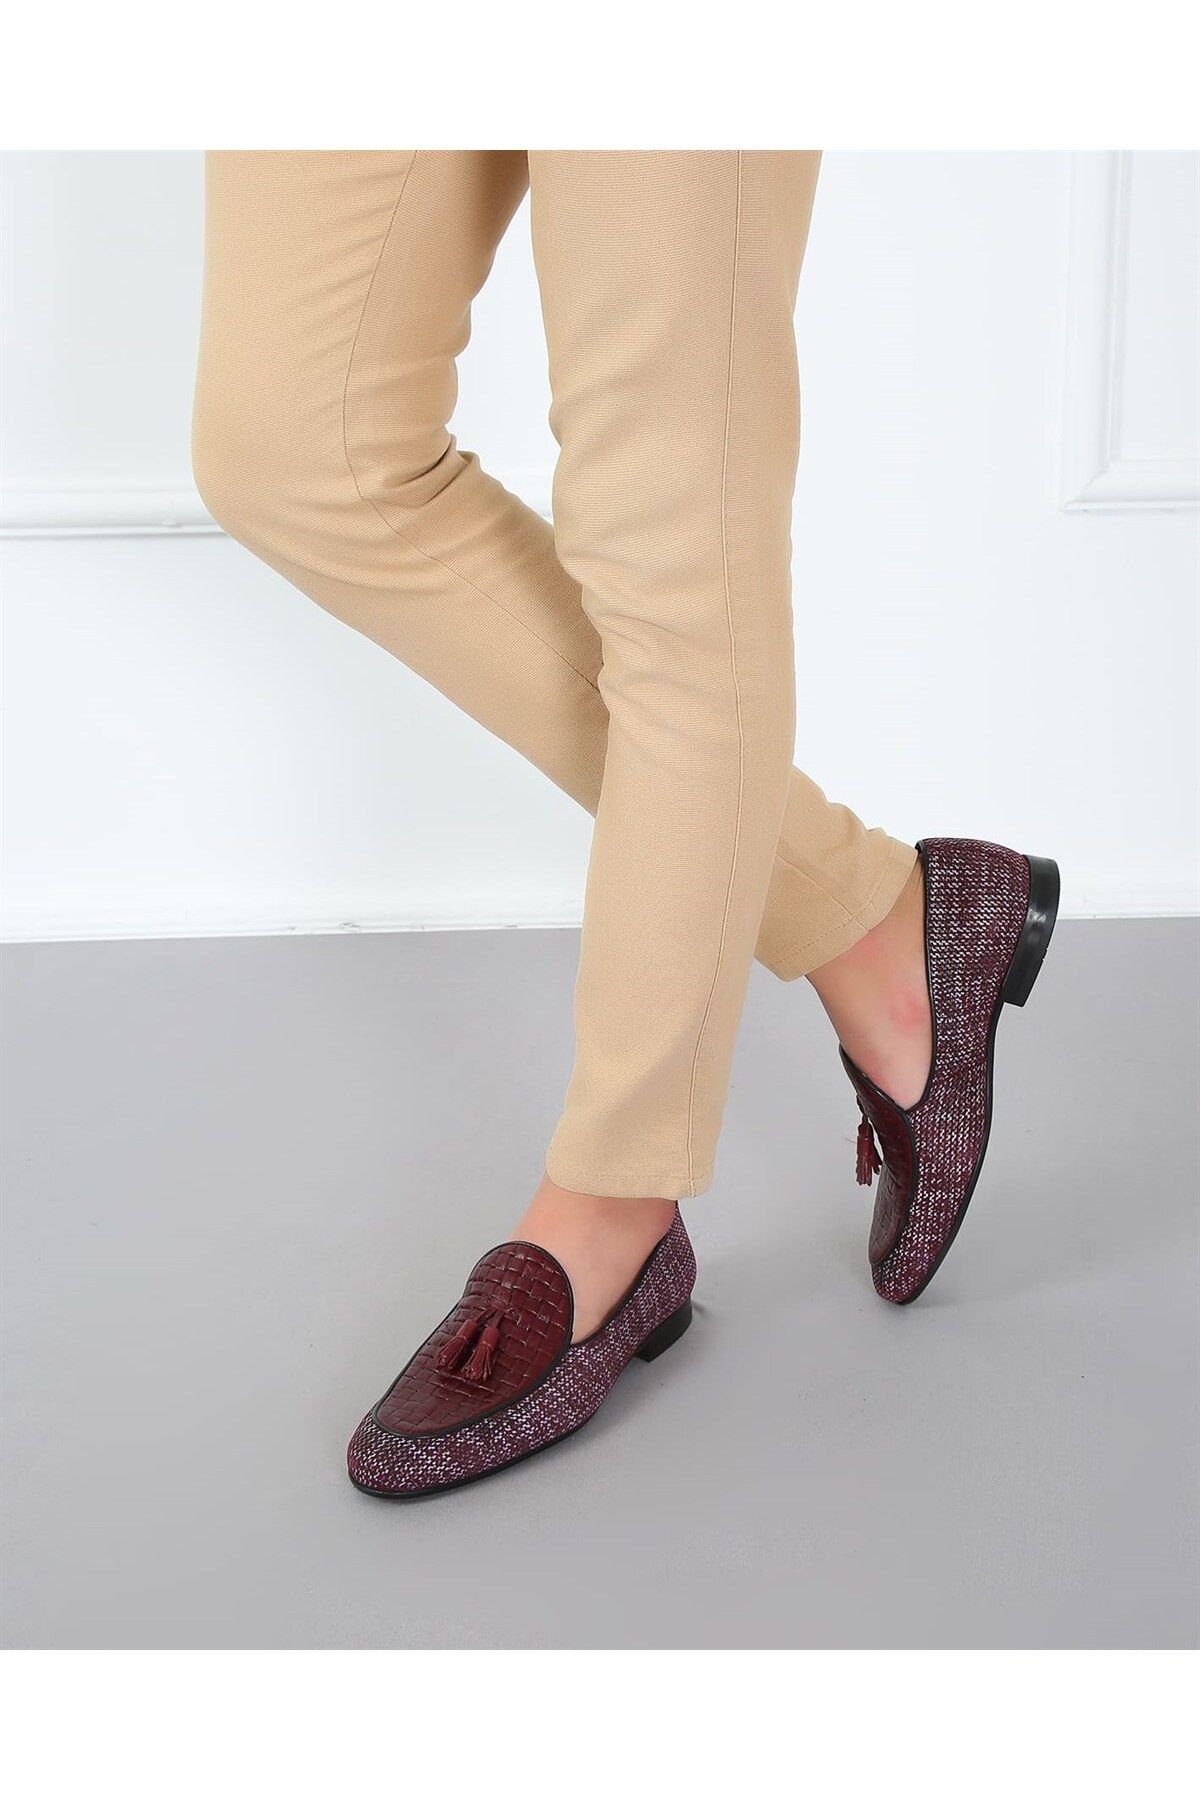 CassidoShoes Cassıdsohoes Erkek Klasik Ayakkabı Bordo Renk 023-43210